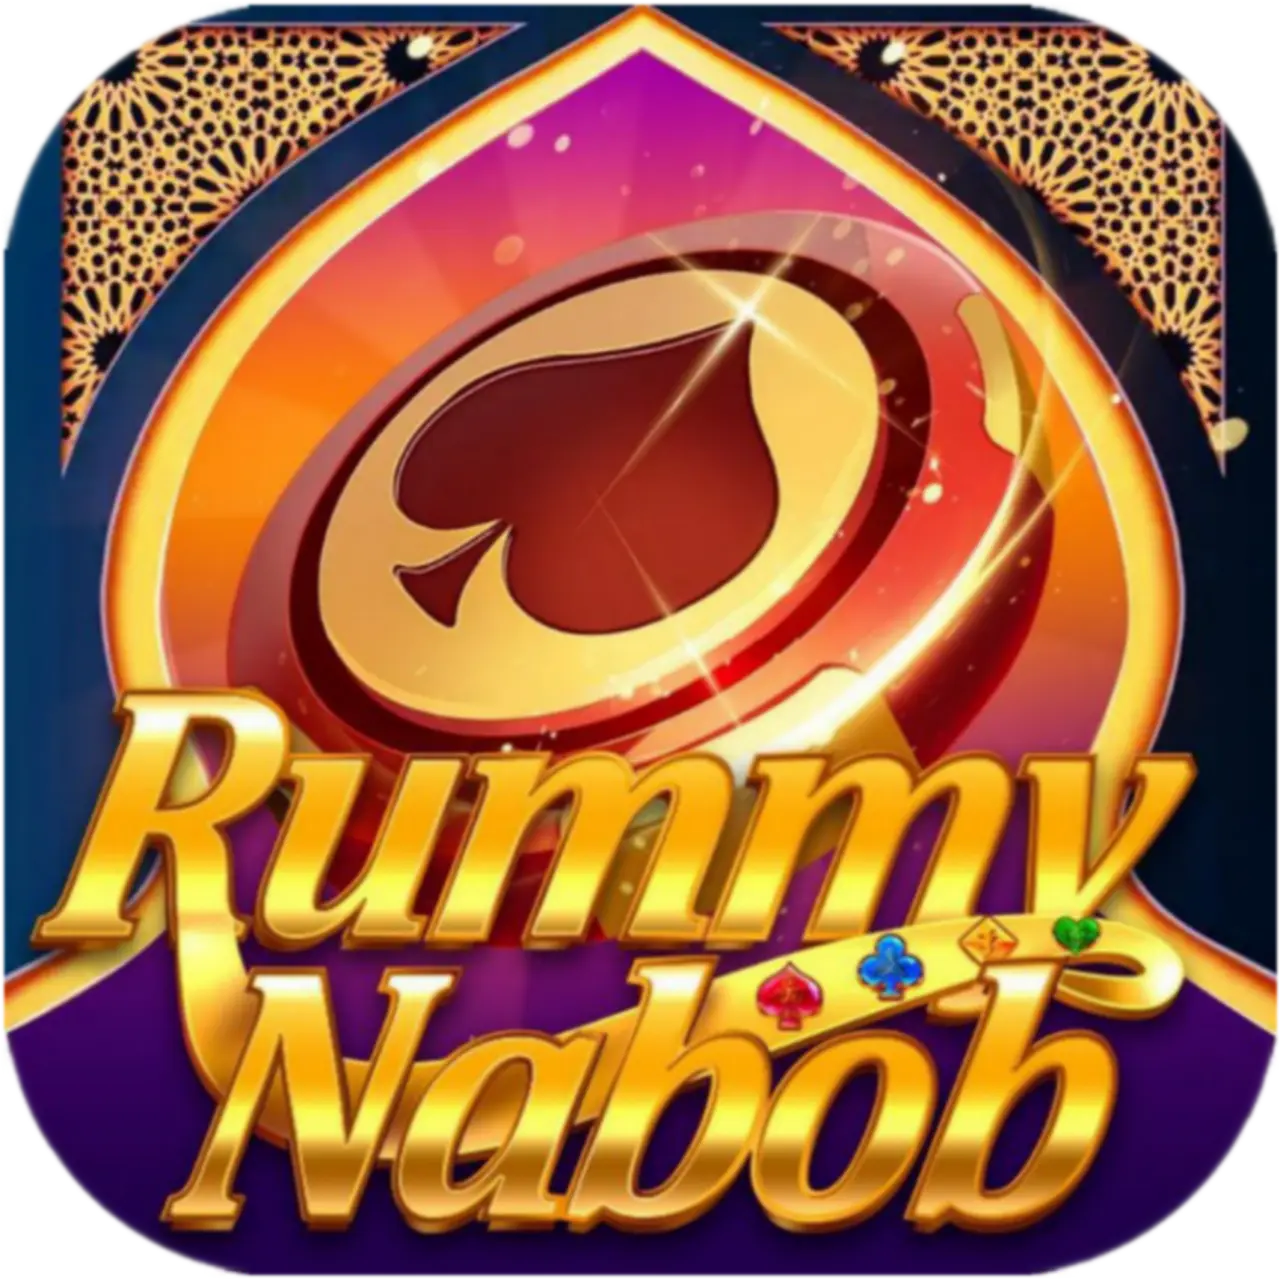 Rummy Nabob App Download